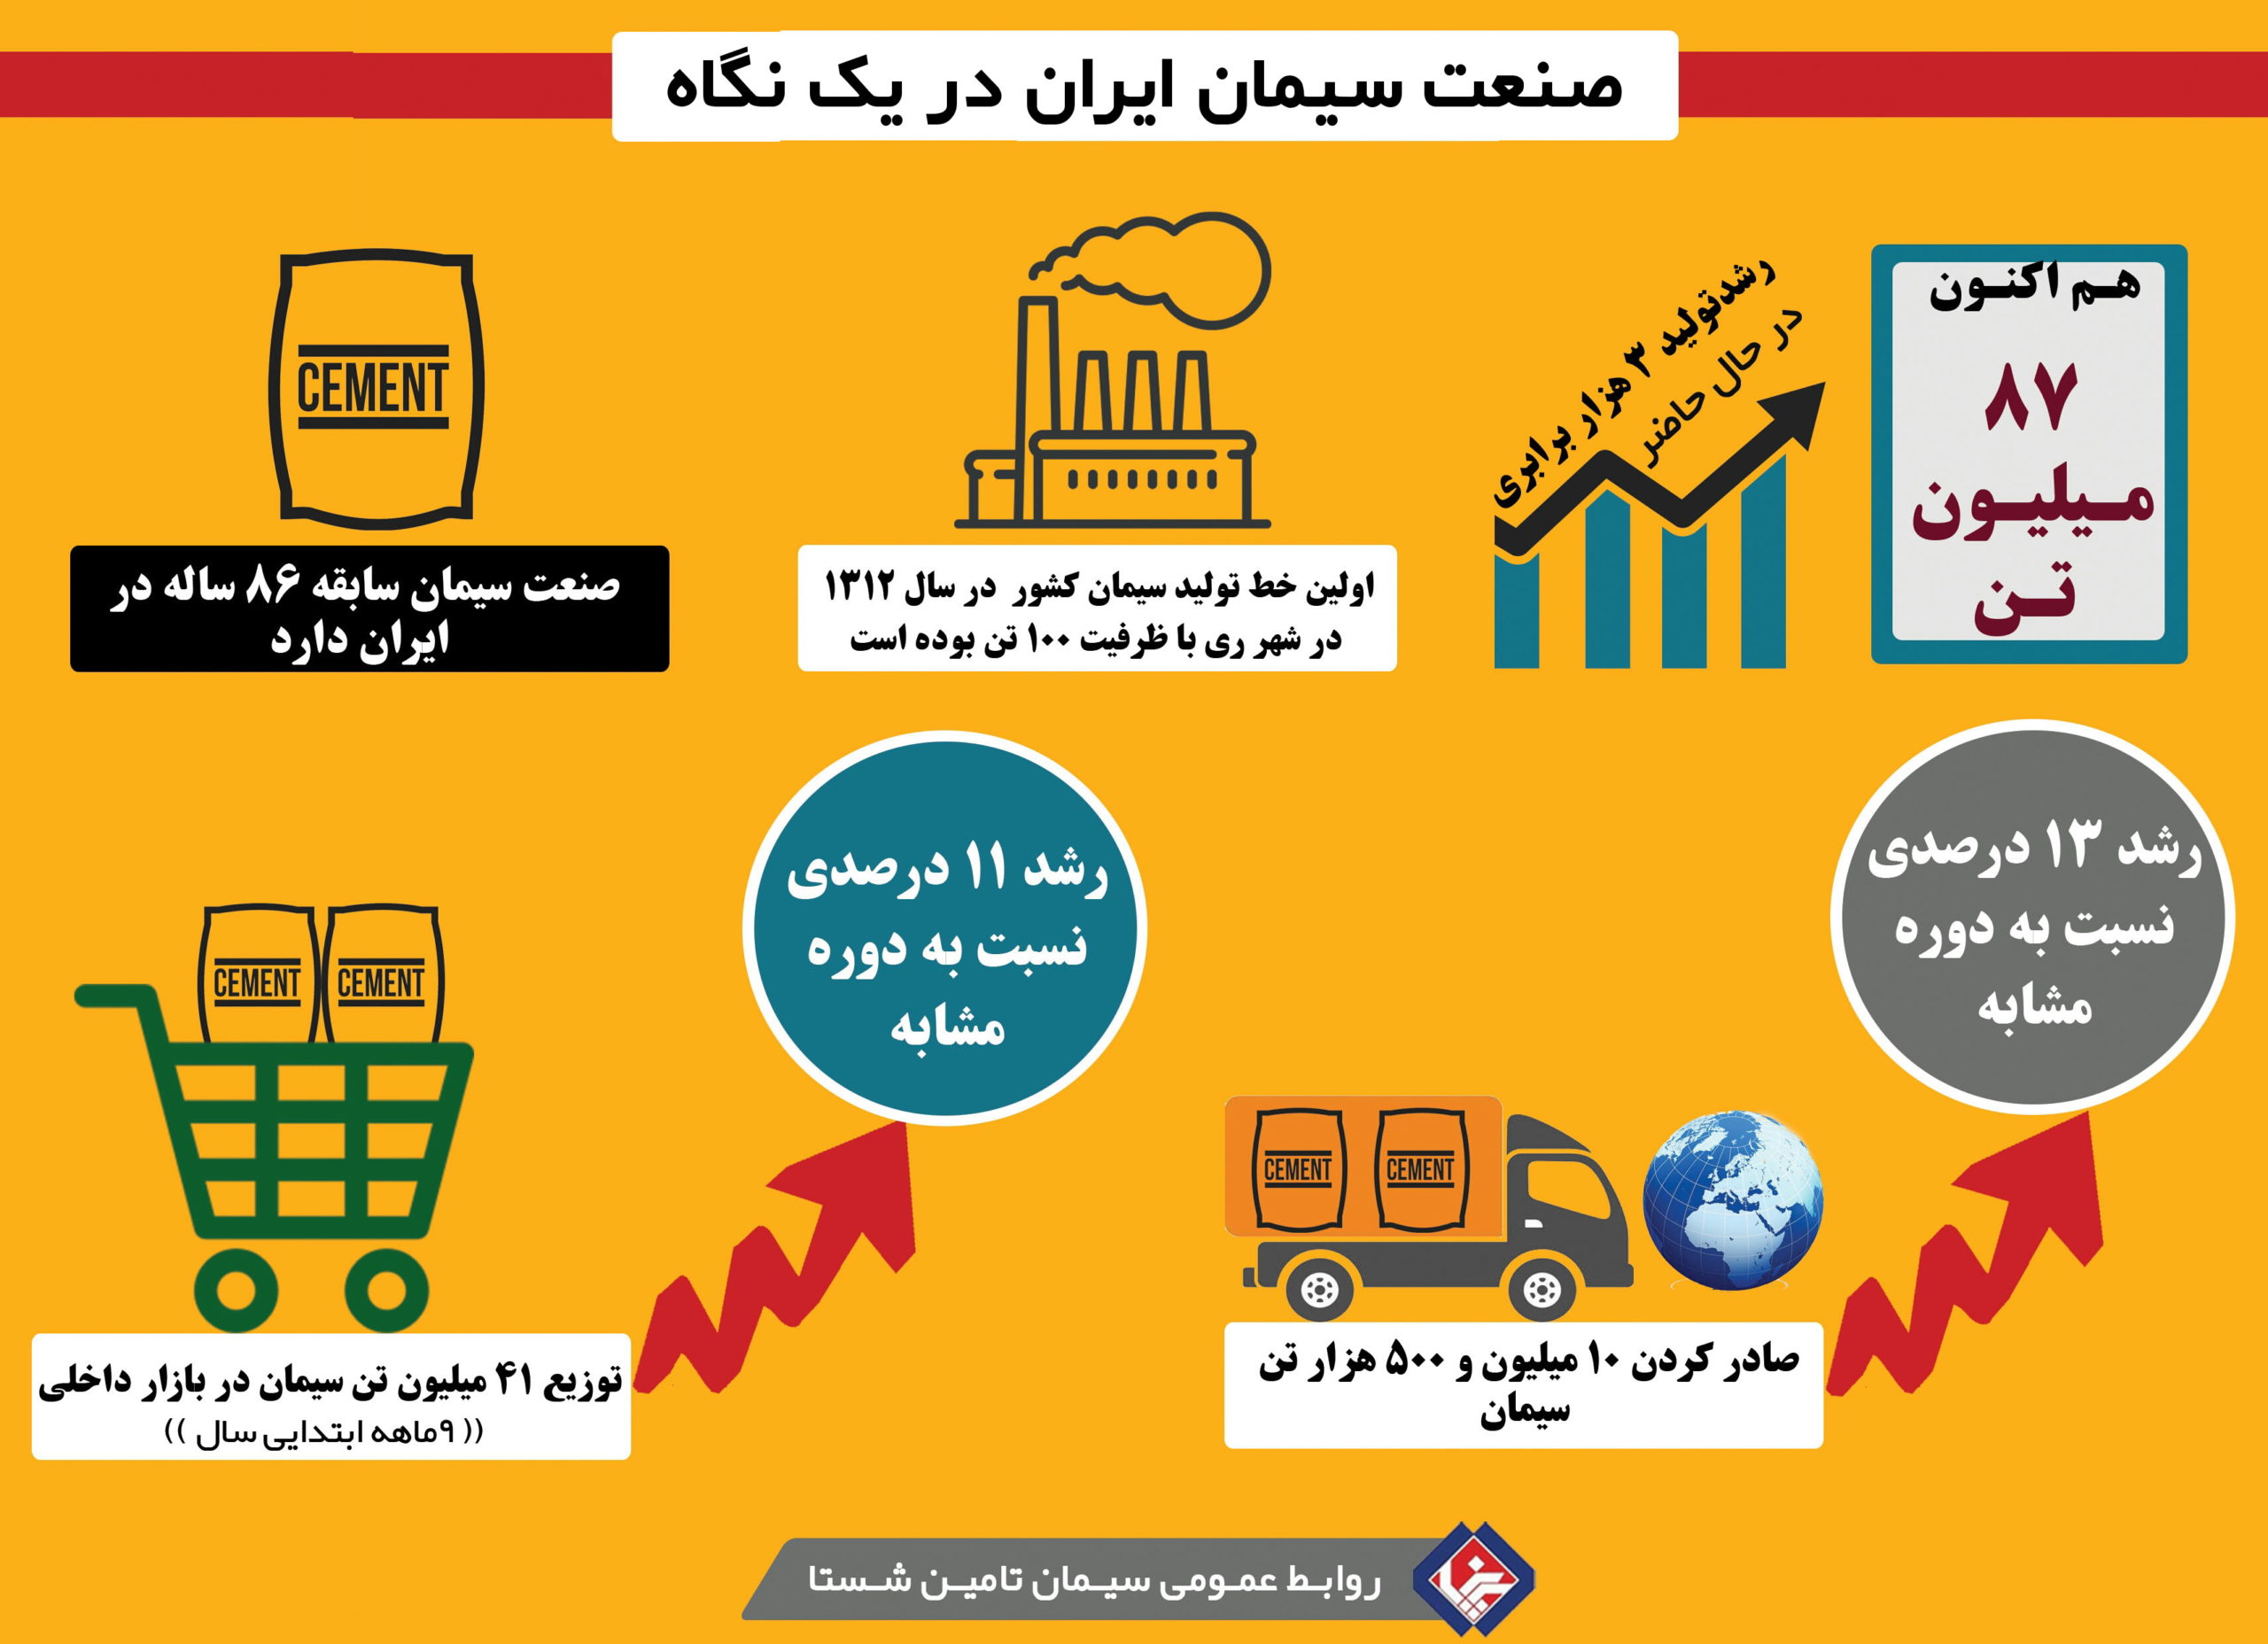 اینفوگرافی صنعت سیمان در ایران